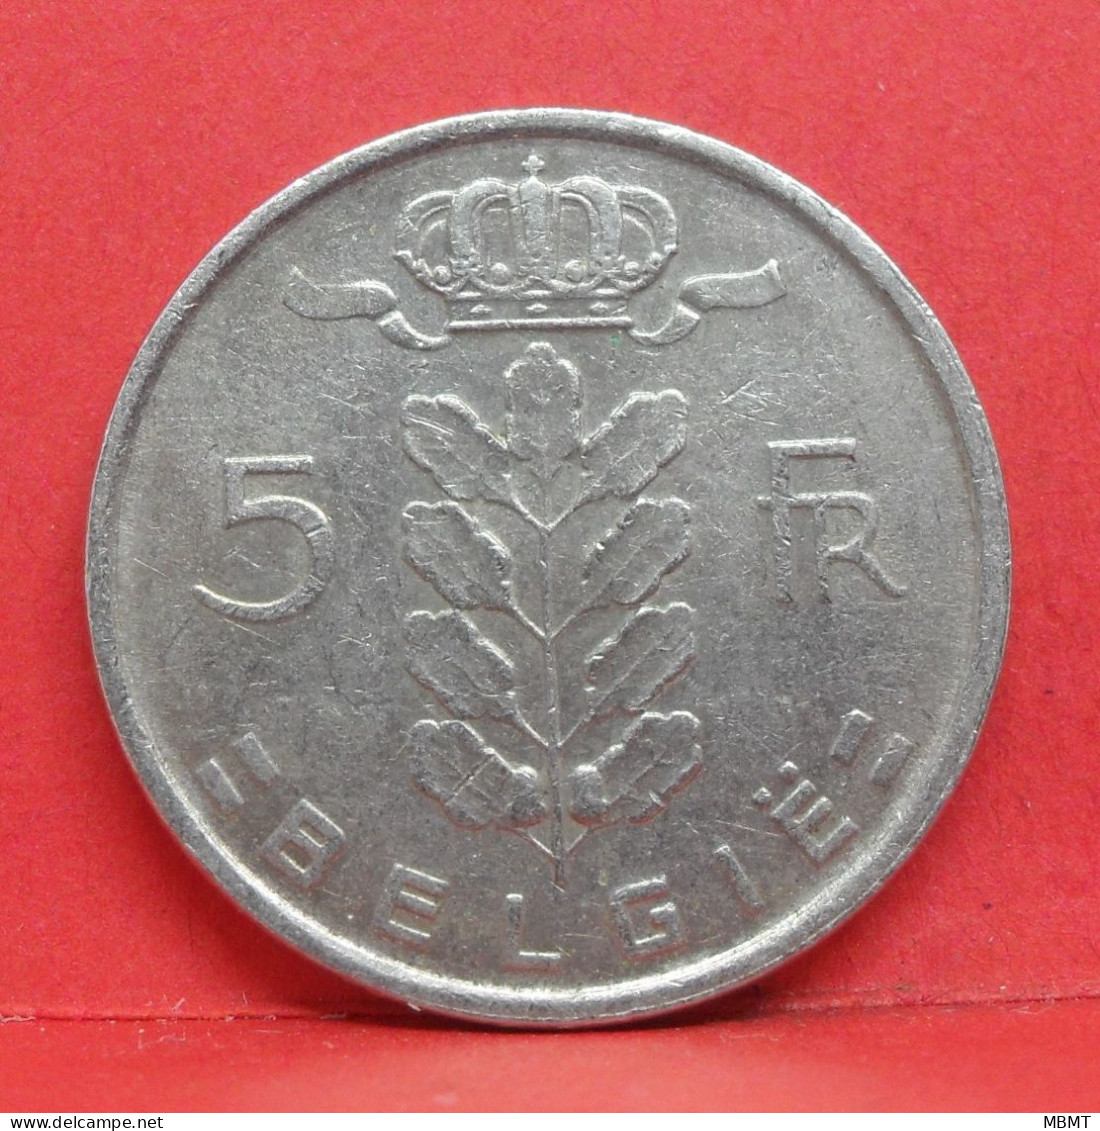 5 Frank 1971 - TB - Pièce Monnaie Belgie - Article N°1992 - 5 Frank